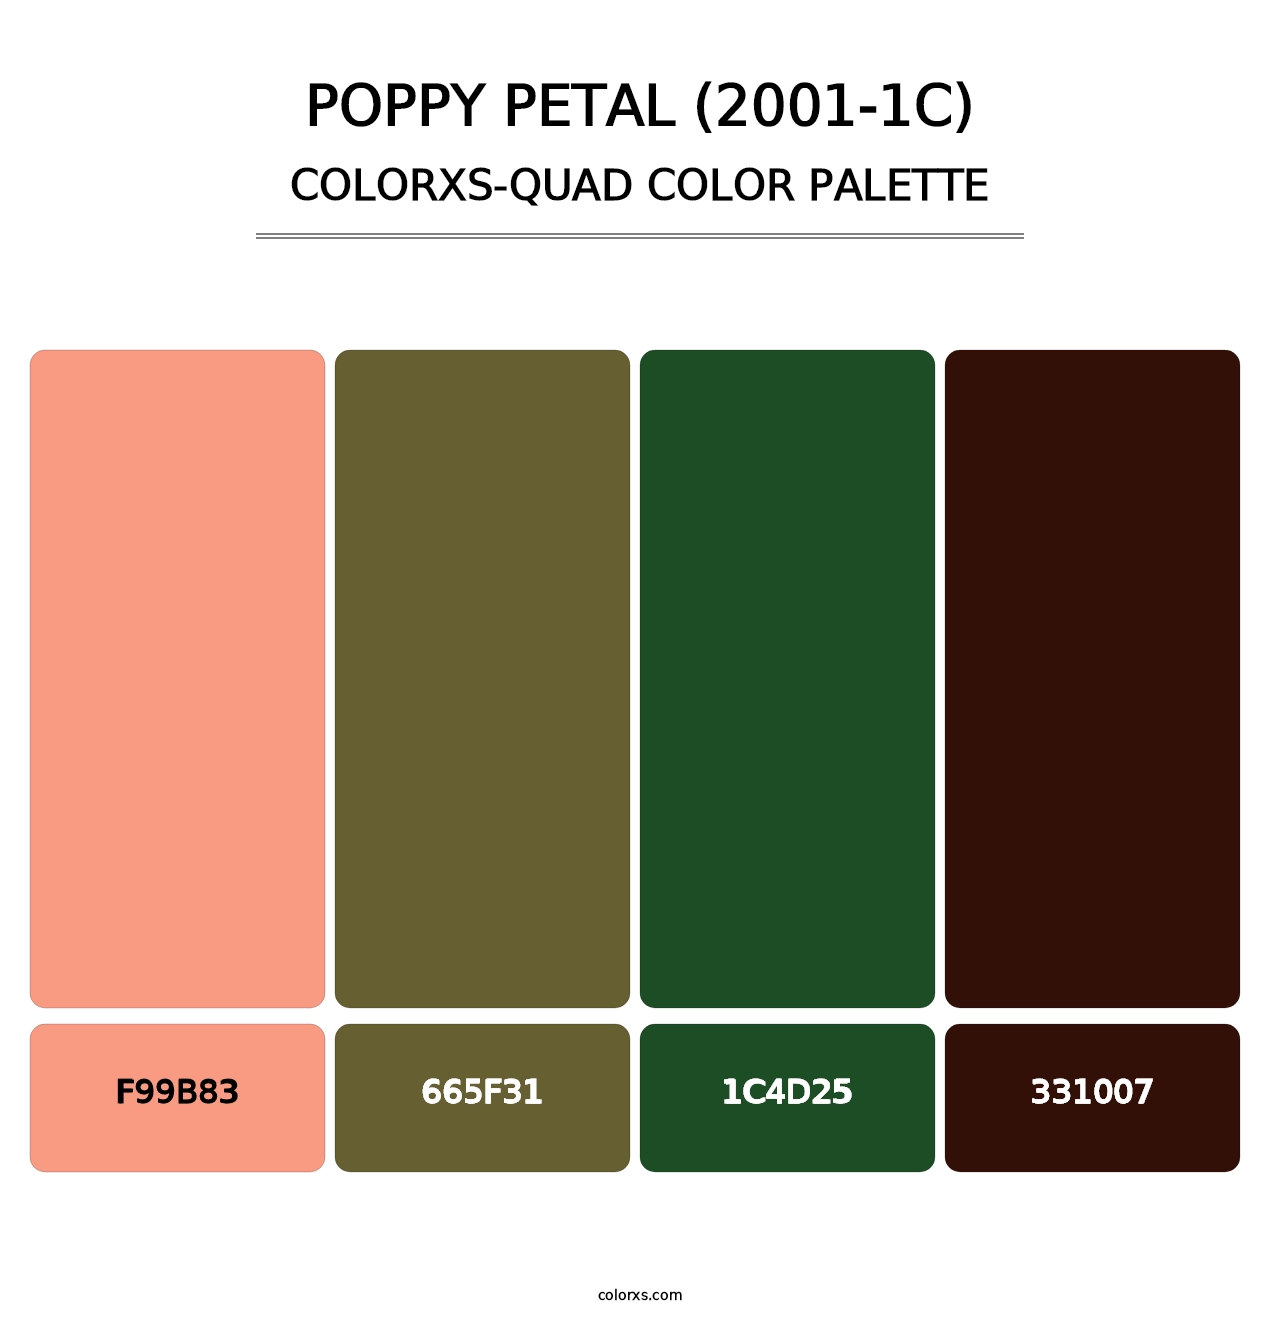 Poppy Petal (2001-1C) - Colorxs Quad Palette